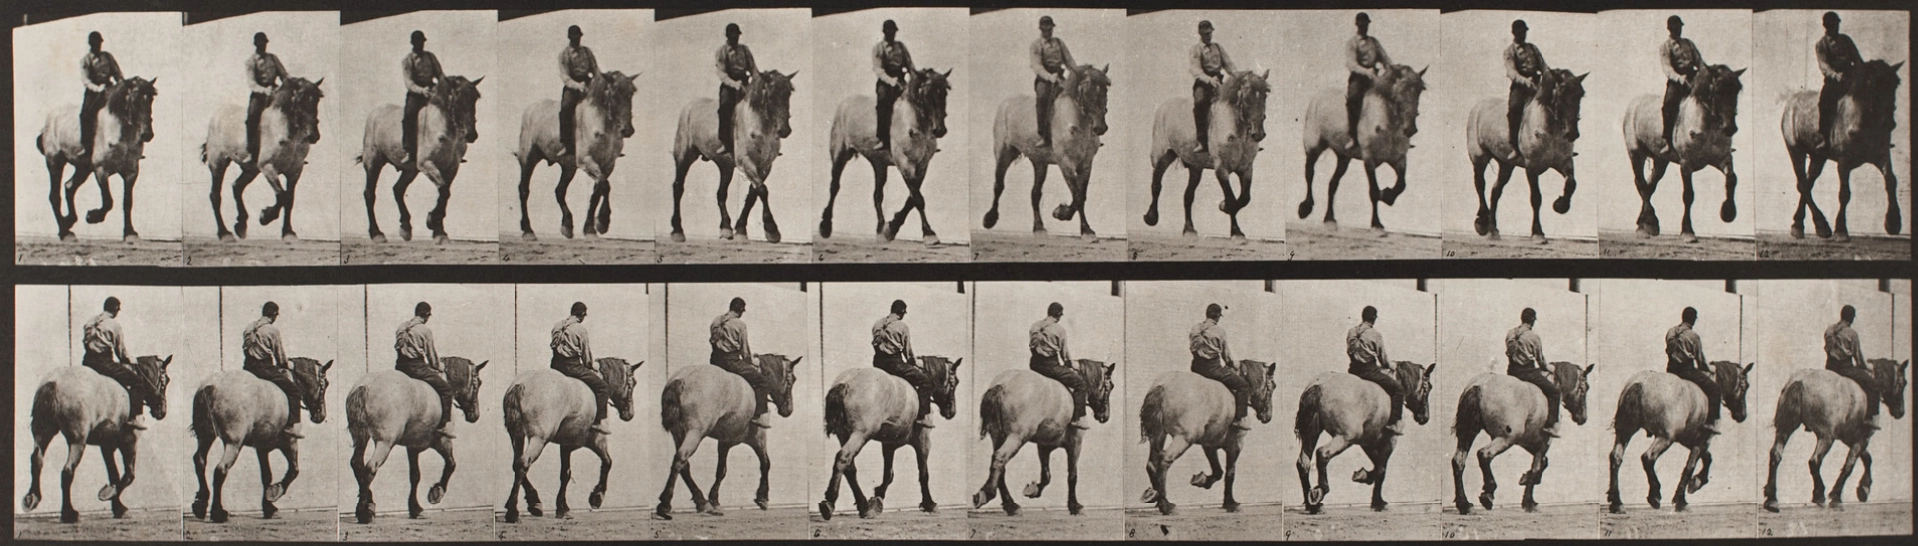 Sport a tělo v pohybu jako objekt fotografa od historie po současnost